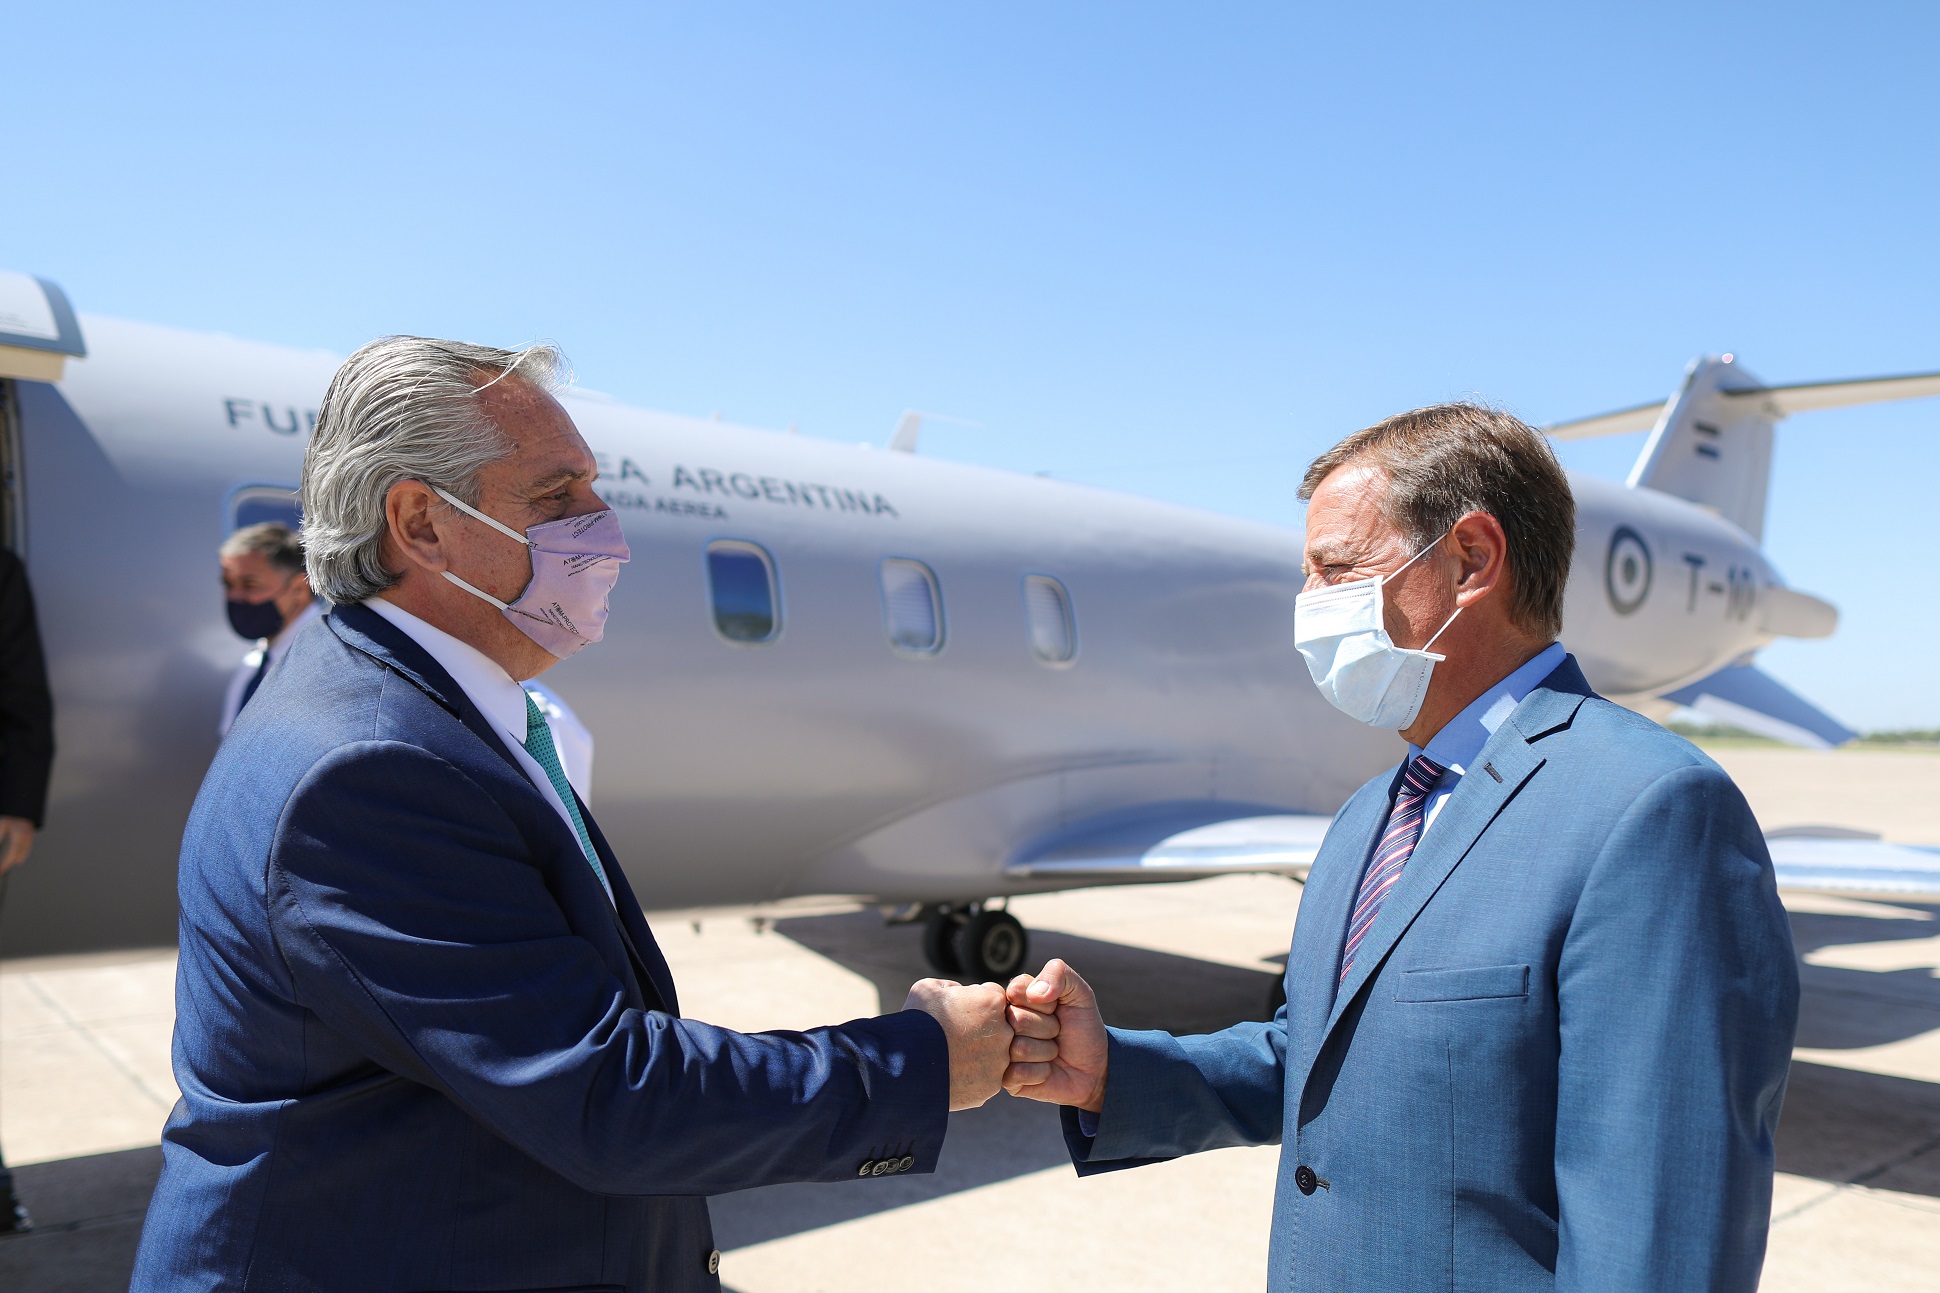 El Presidente llegó a Mendoza donde fue recibido por el gobernador Rodolfo Suárez